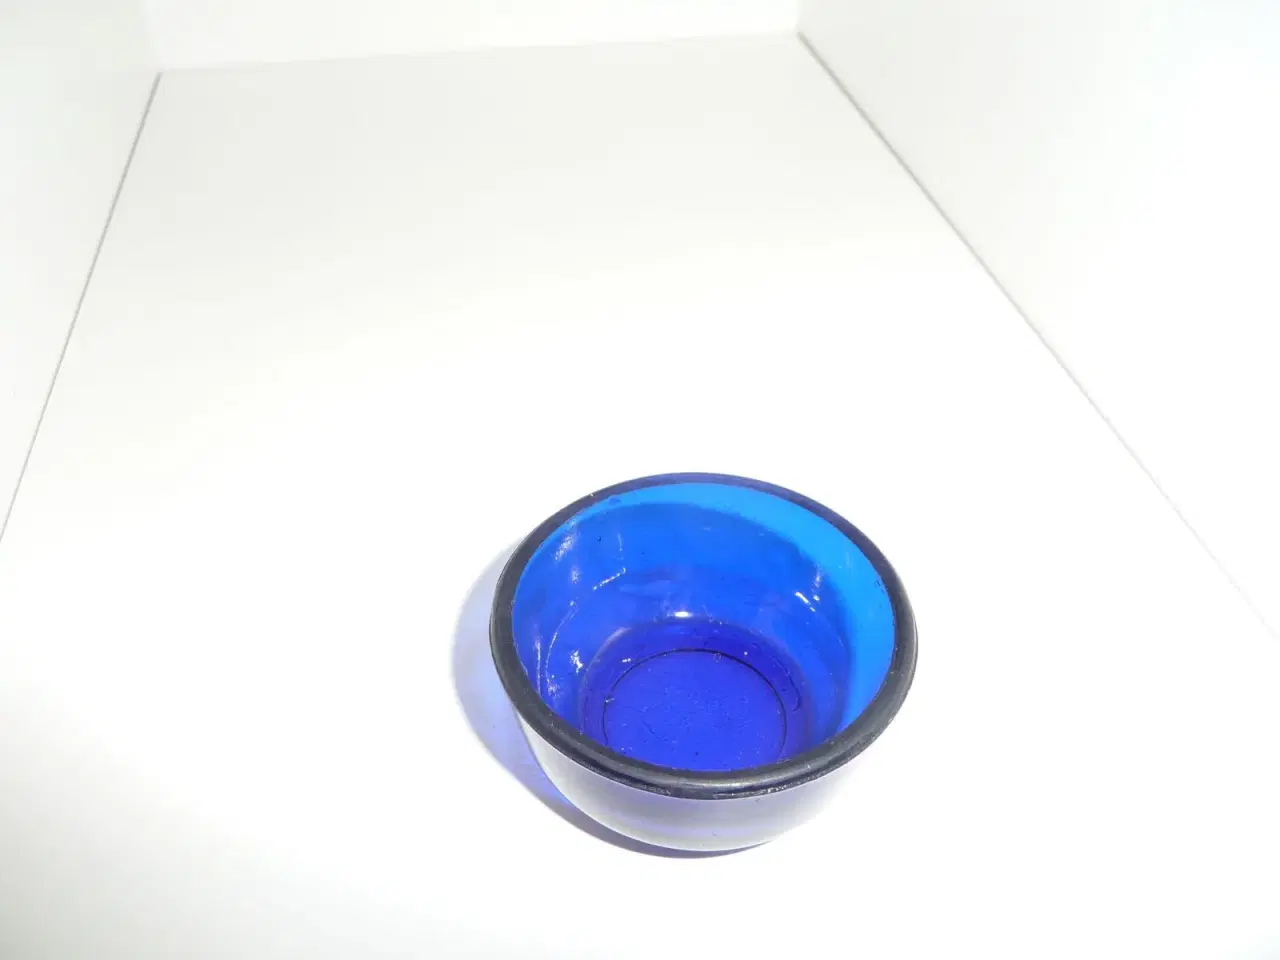 Billede 2 - lille blå skål eller saltkar